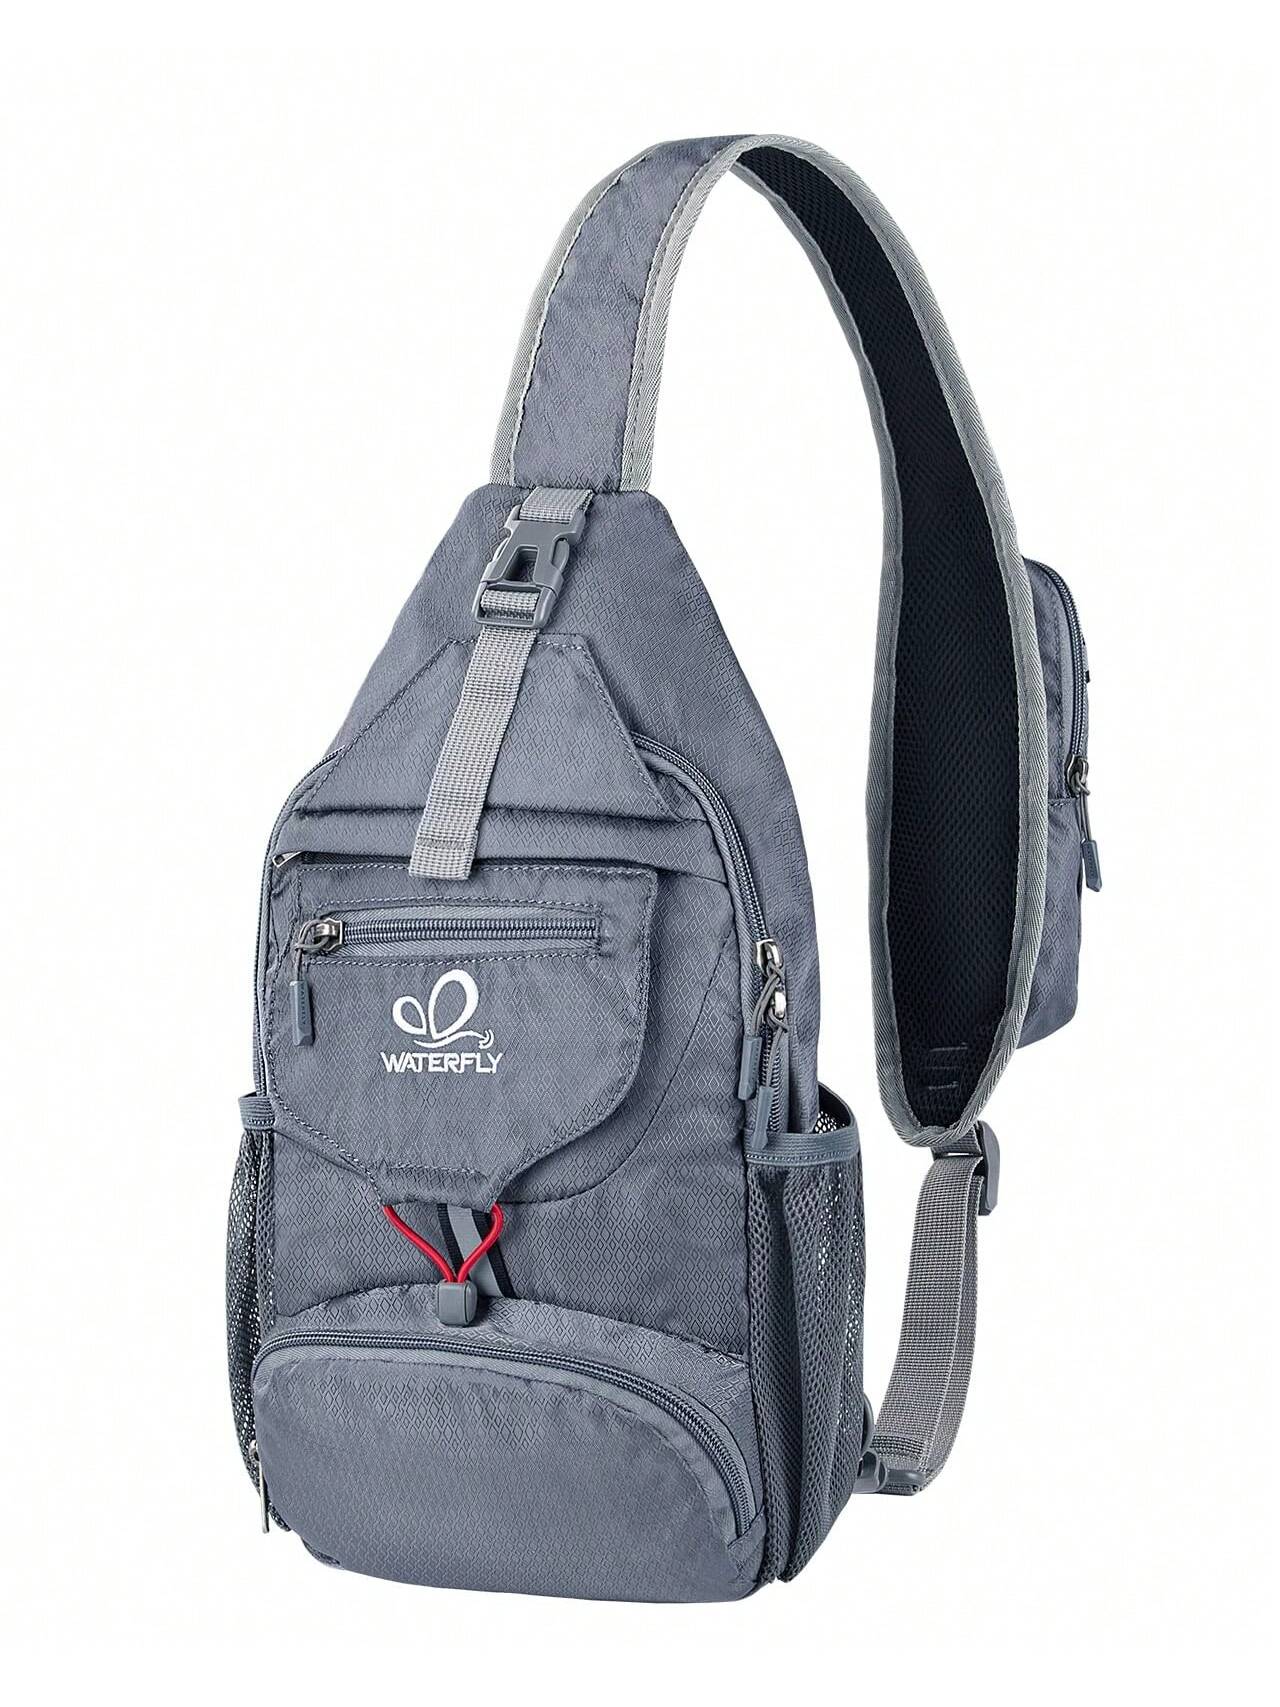 WATERFLY Packable Маленький рюкзак через плечо для мужчин и женщин Складная сумка через плечо на груди Дневной рюкзак для пеших прогулок и путешествий, серебристо-серый